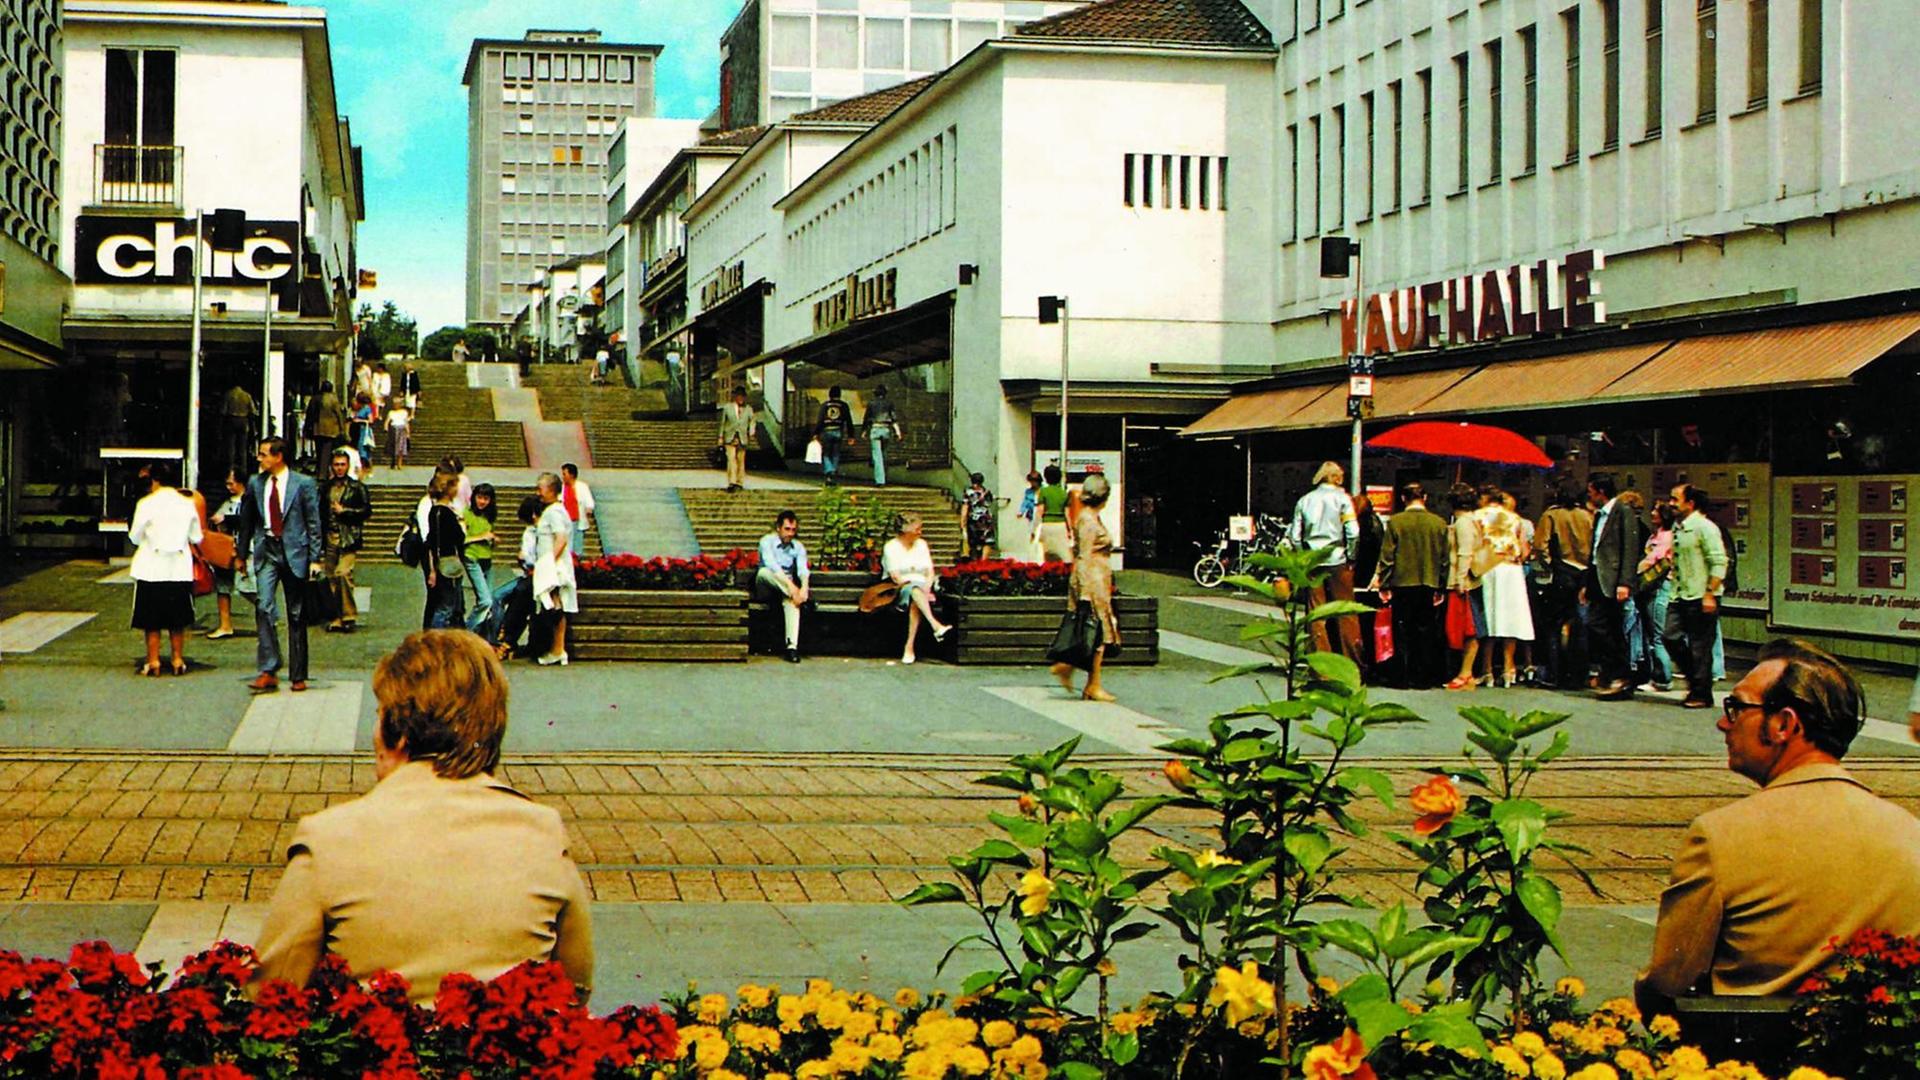 Ansichtspostkarte der Fußgängerzone "Treppenstraße" in Kassel mit Blumenkübeln im Vordergrund und den Treppen und Geschäften im Hintergrund. Farblich 70ger Jahre Charme.